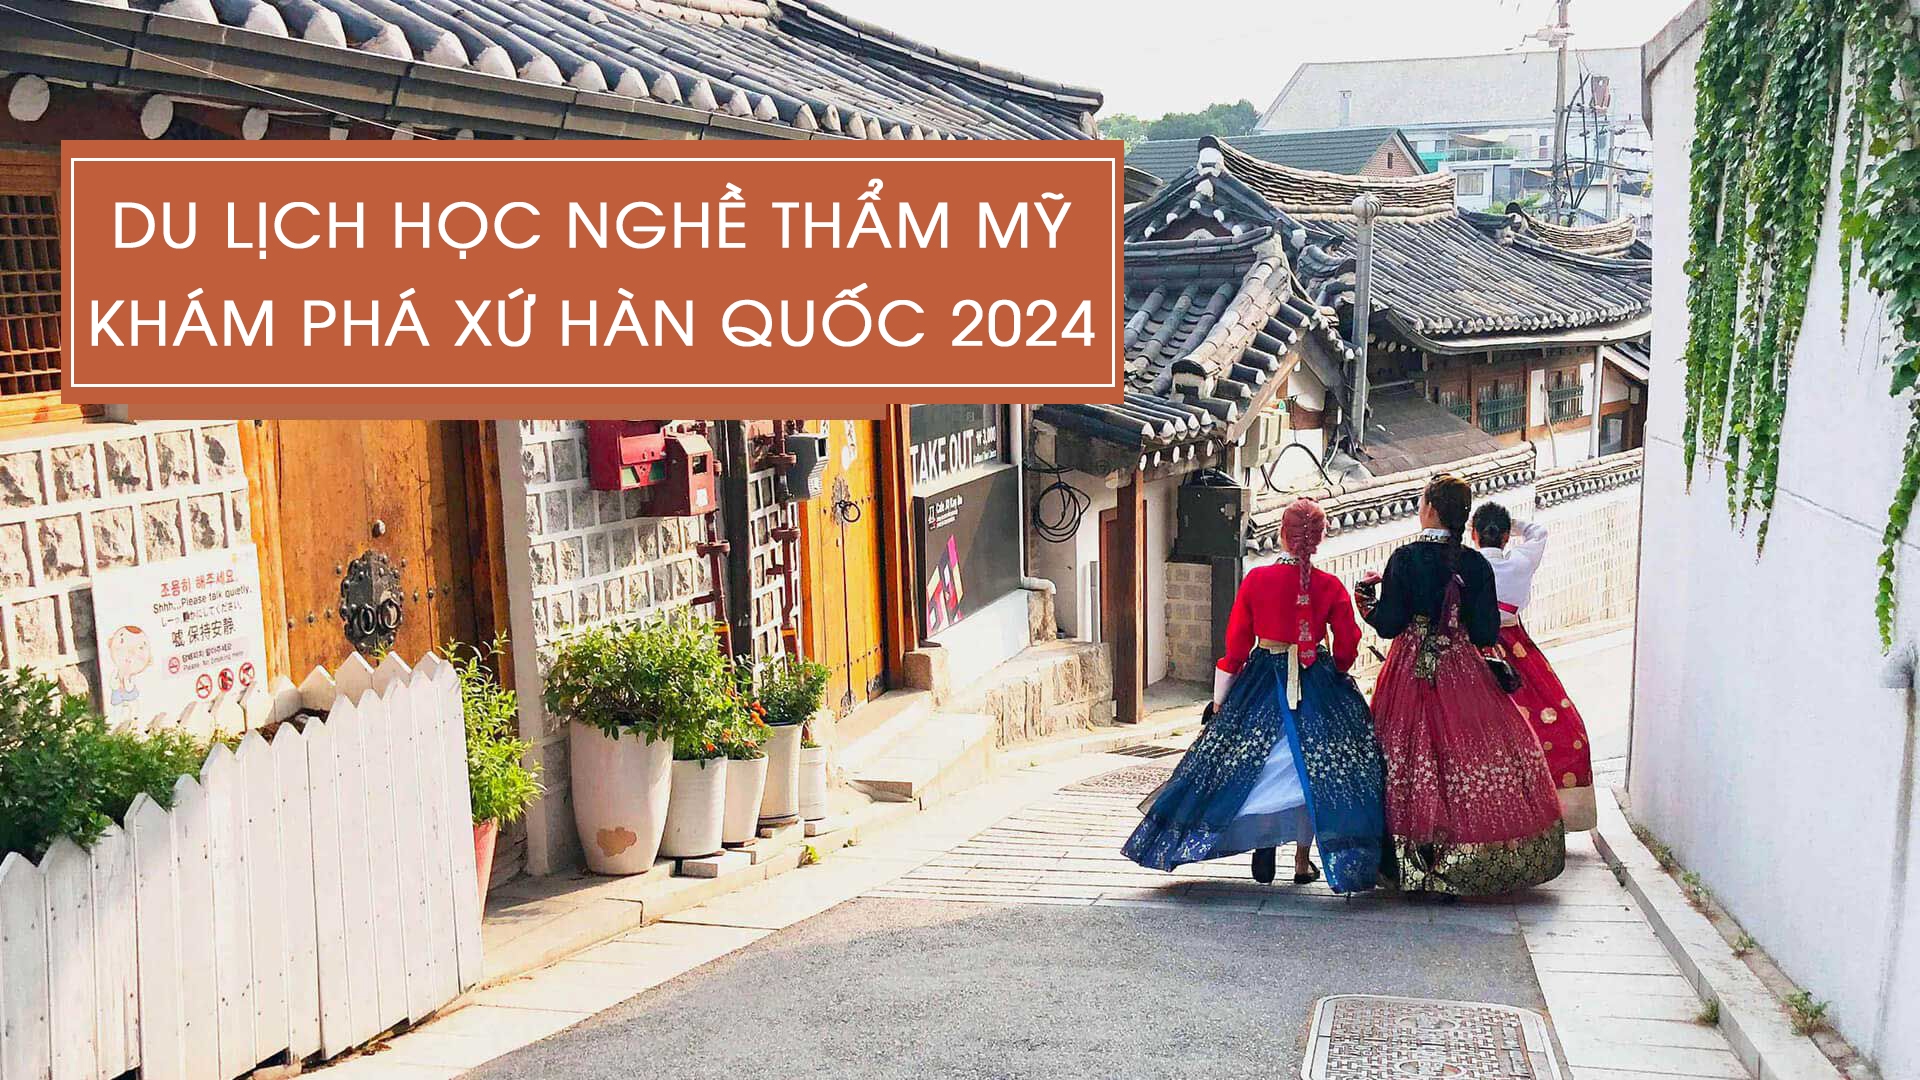 Du lịch học nghề - Khám phá xứ Hàn Quốc 2024